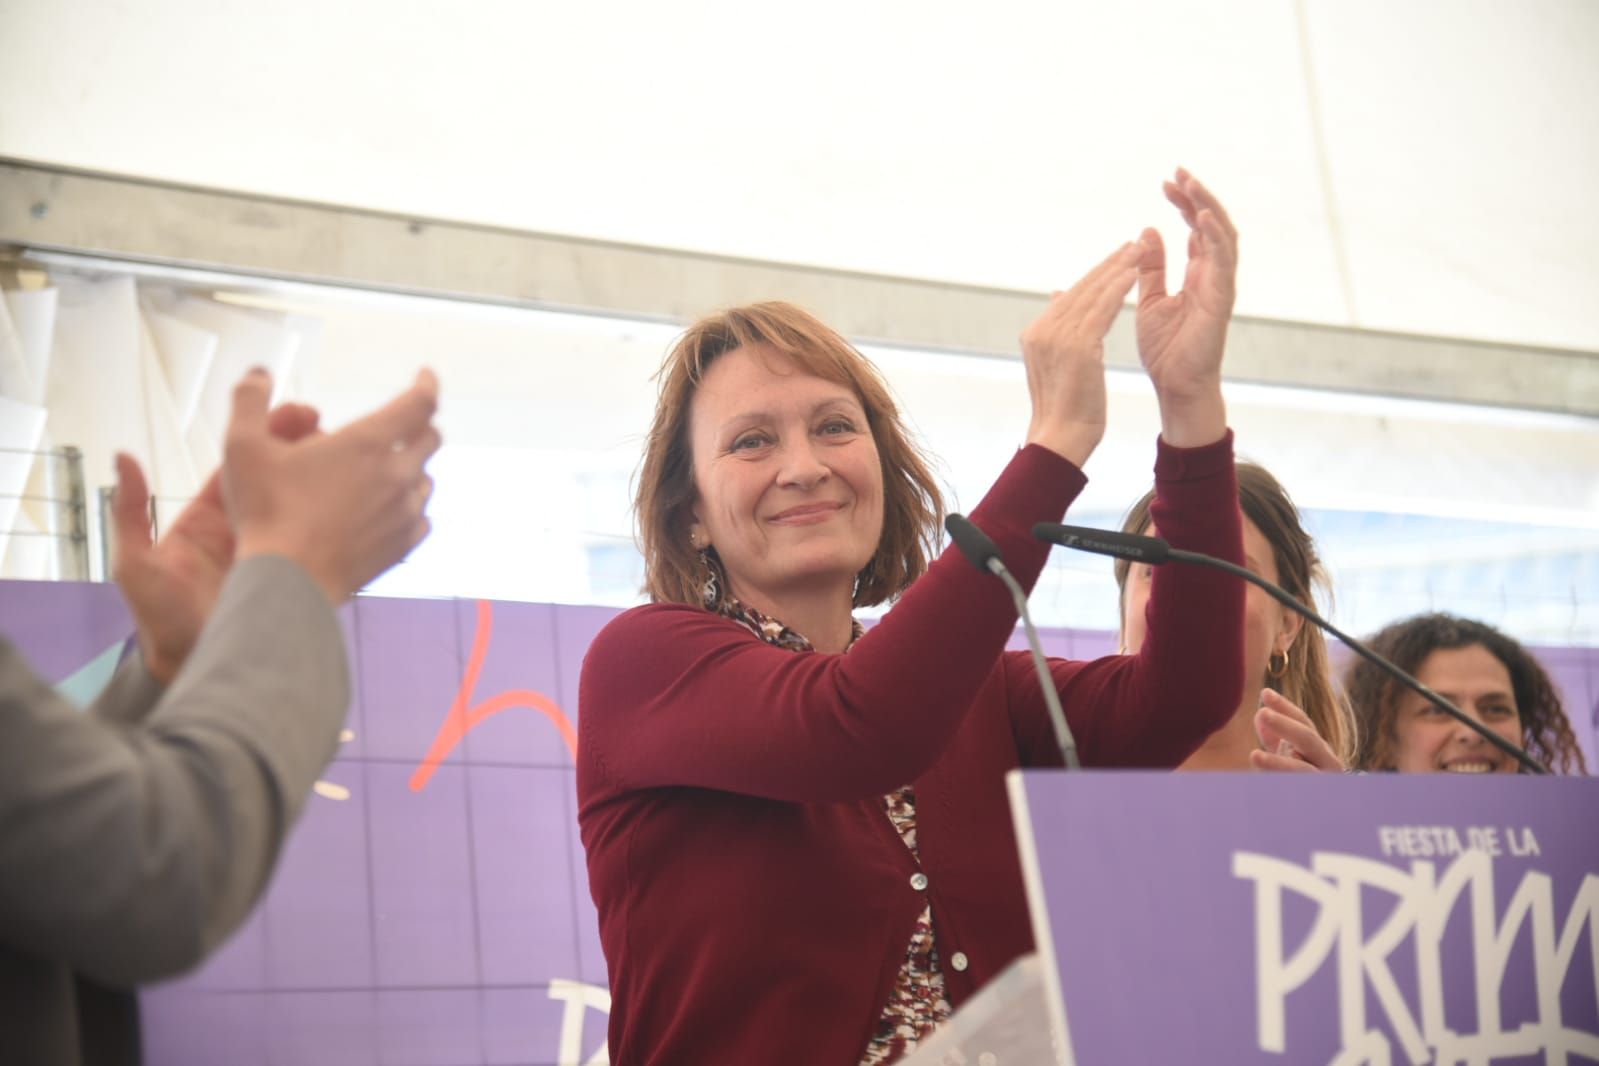 Fotogalería | Así está siendo la Fiesta de la Primavera de Podemos en Zaragoza